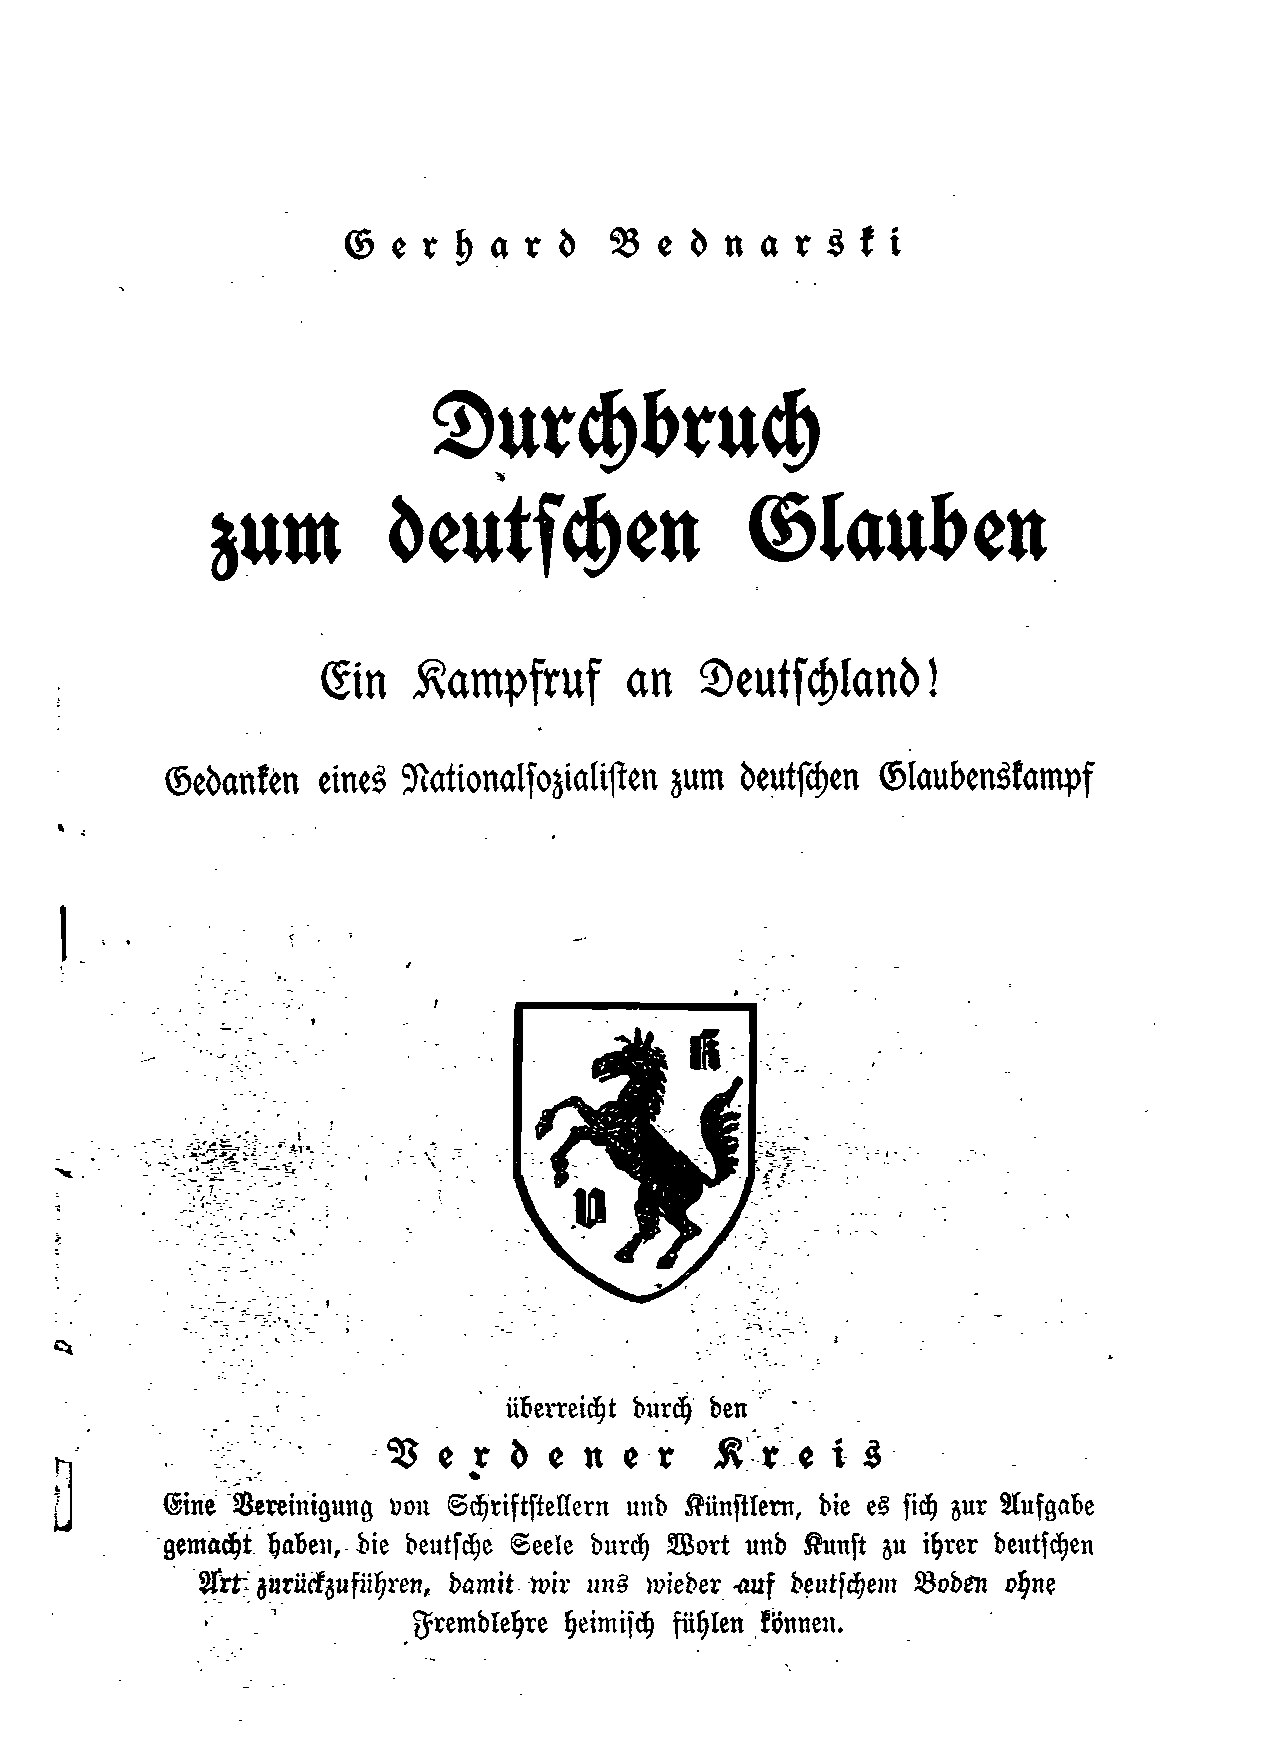 Durchbruch zum deutschen Glauben (1941, 36 S., Scan, Fraktur)